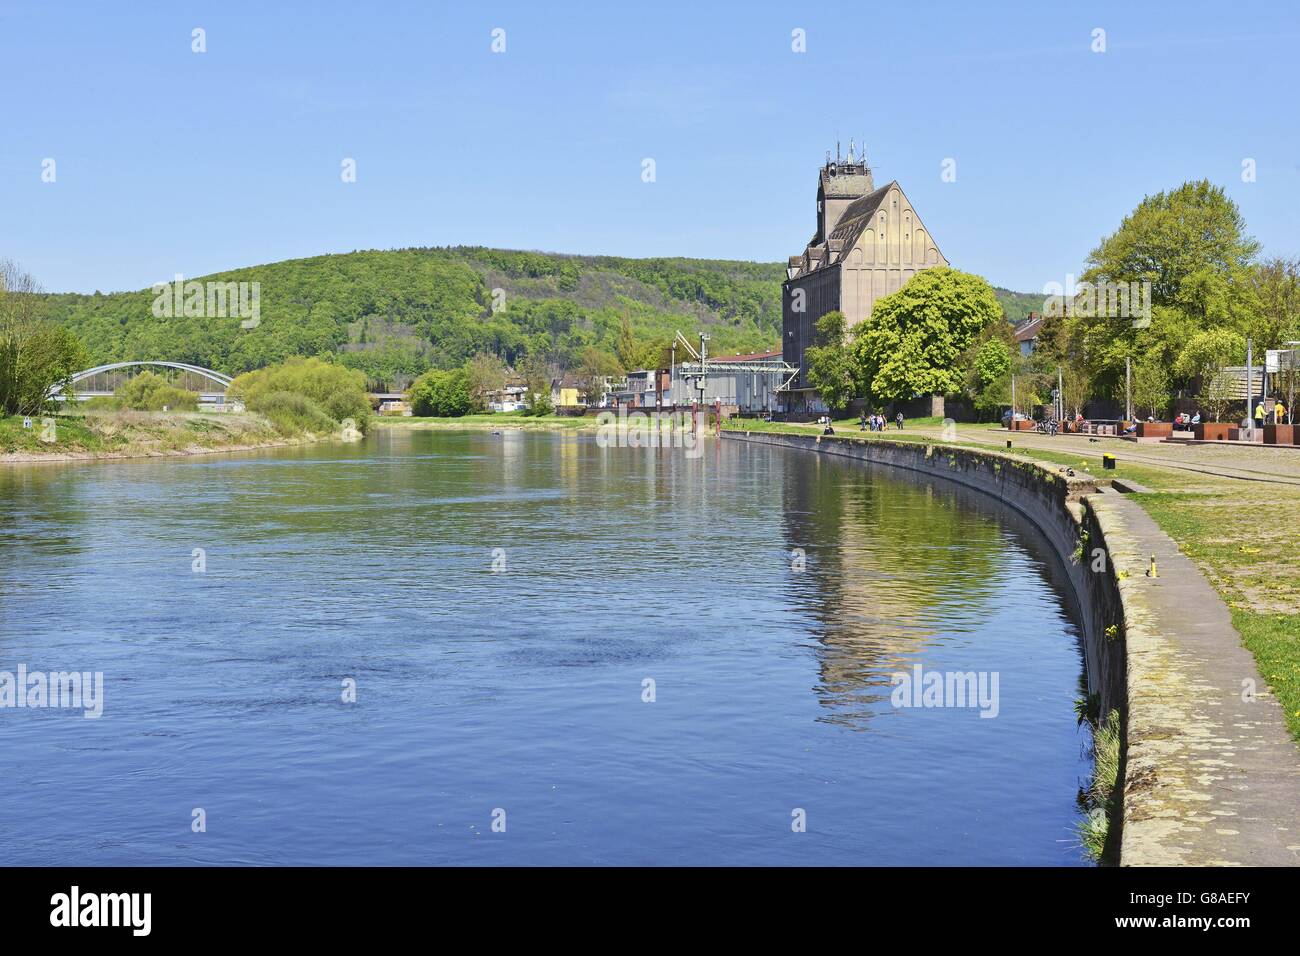 Steinige Kai am geschwungene Ufer der Weser mit einem großen Getreidesilo in der Stadt Holzminden, 5. Mai 2016 | weltweite Nutzung Stockfoto